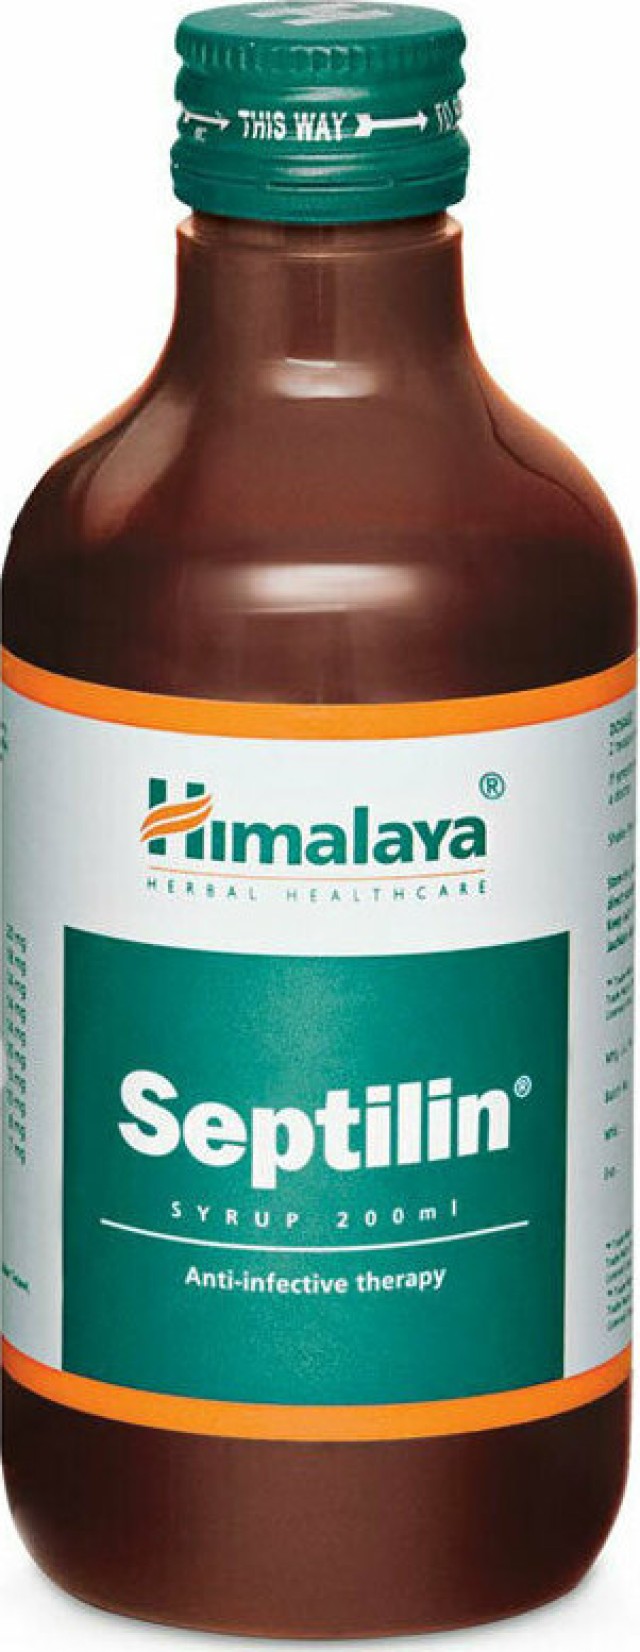 Himalaya Septilin Syrup Σιρόπι για την Ενίσχυση του Ανοσοποιητικού, 200ml